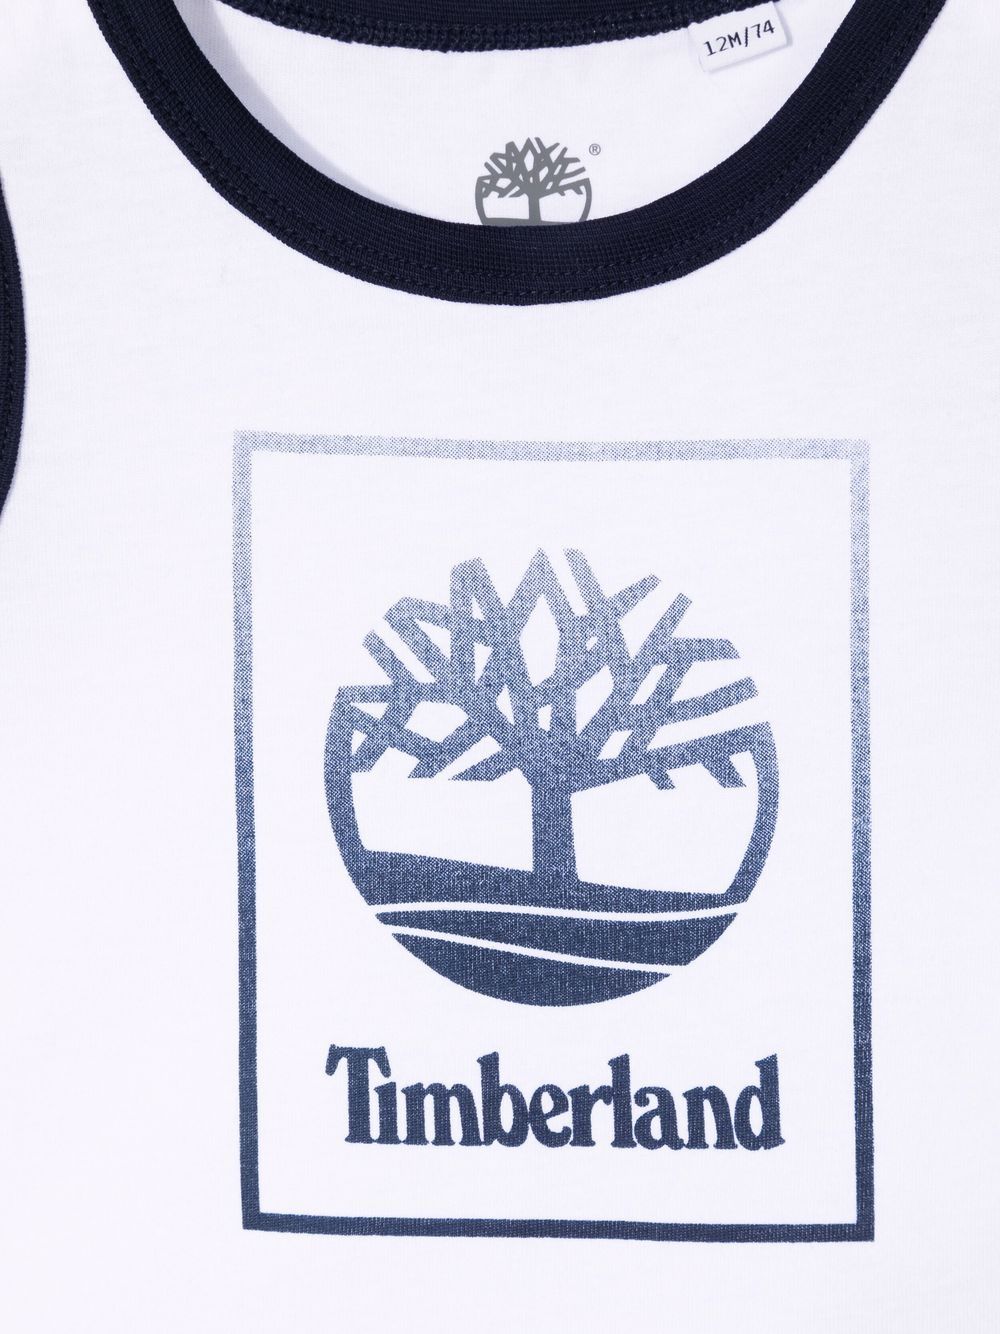 фото Timberland kids топ с логотипом